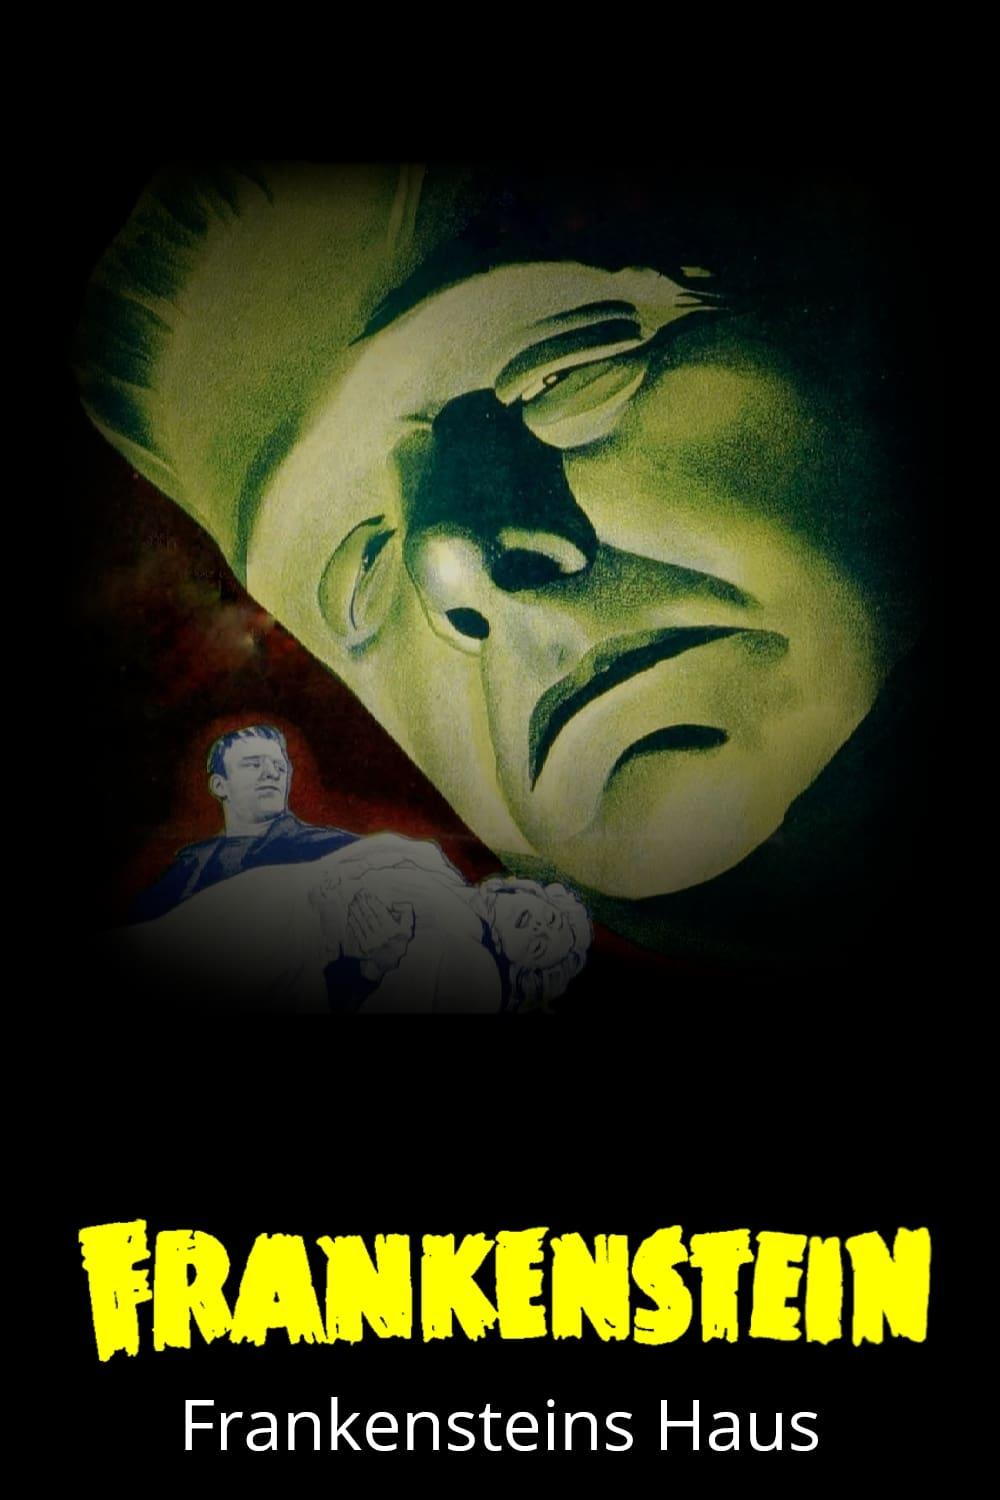 Frankensteins Haus poster